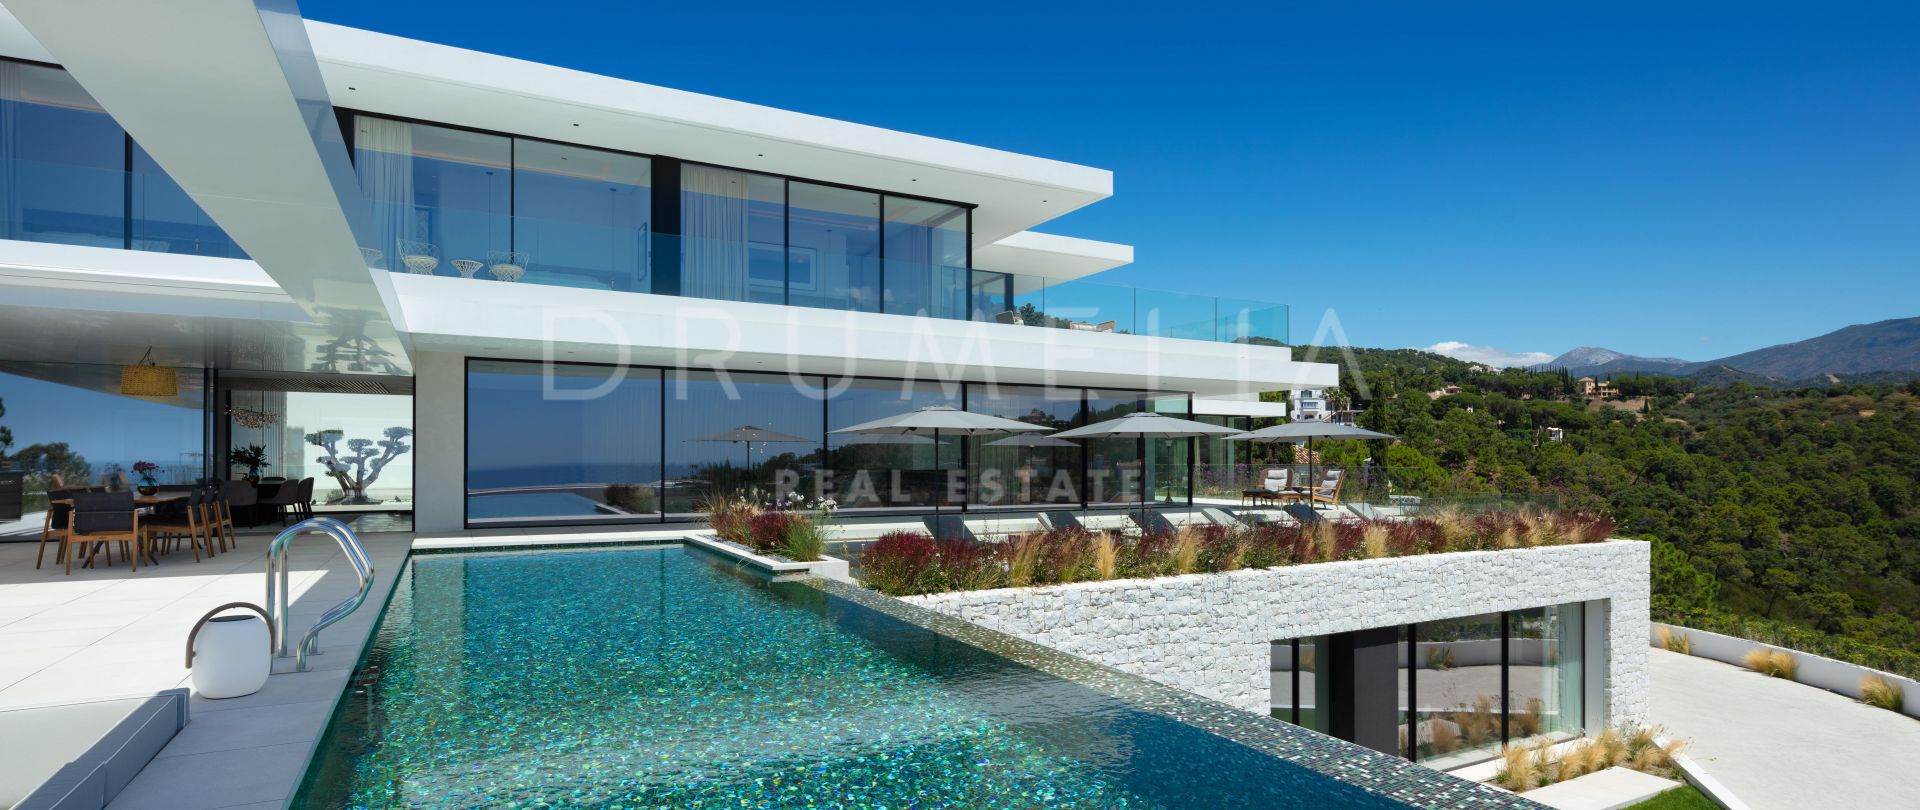 Sensationelle neue moderne Villa mit unglaublicher Aussicht El Madroñal, Benahavis